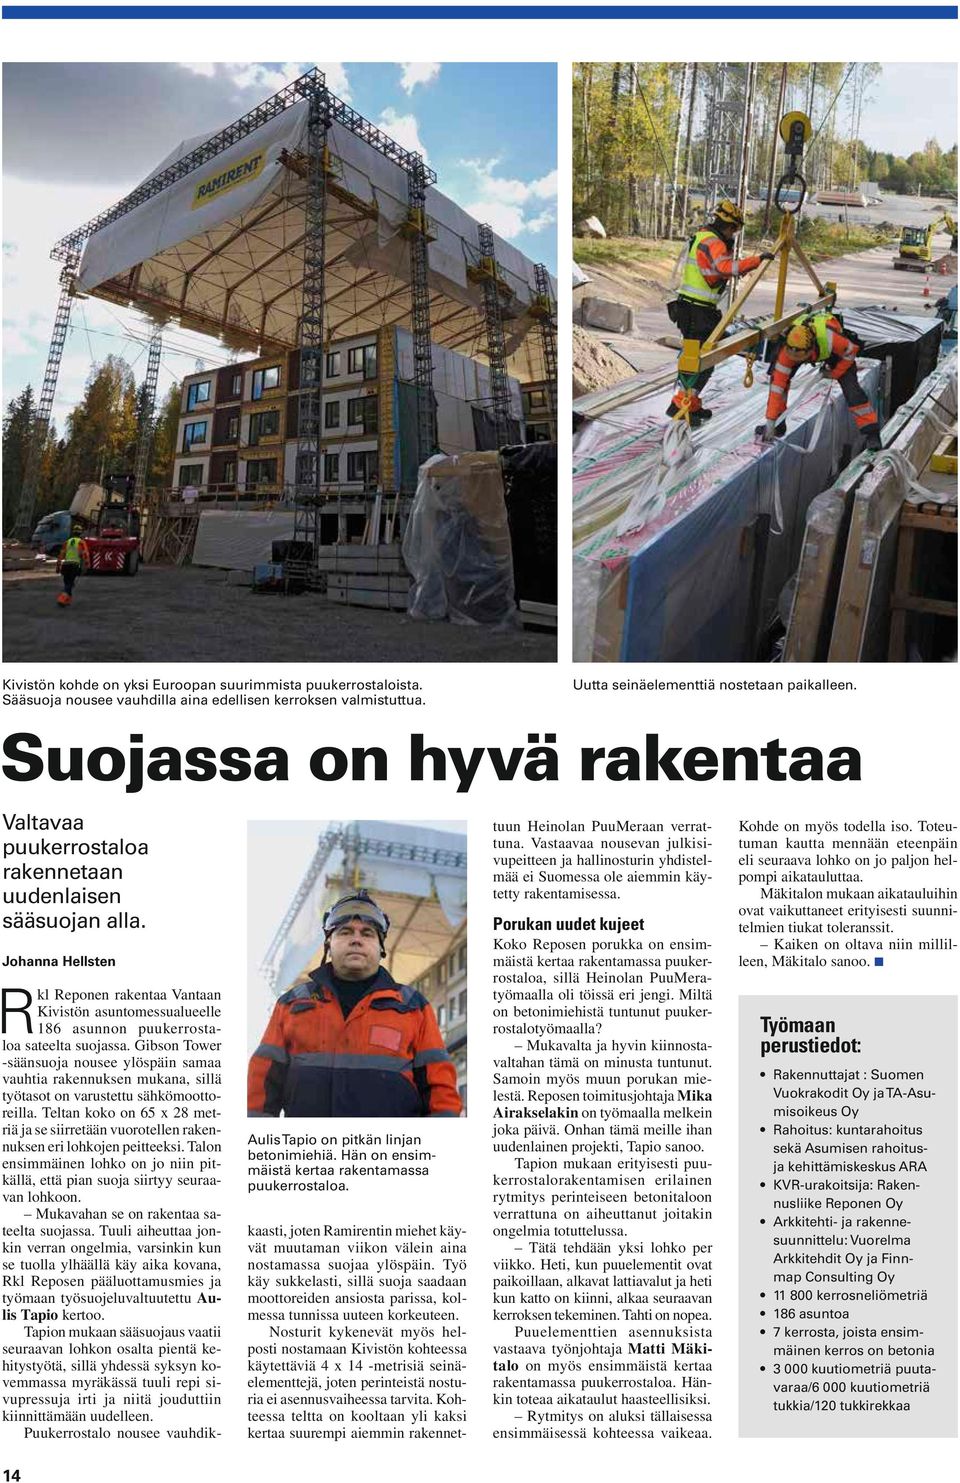 Vastaavaa nousevan julkisivupeitteen ja hallinosturin yhdistelmää ei Suomessa ole aiemmin käytetty rakentamisessa.